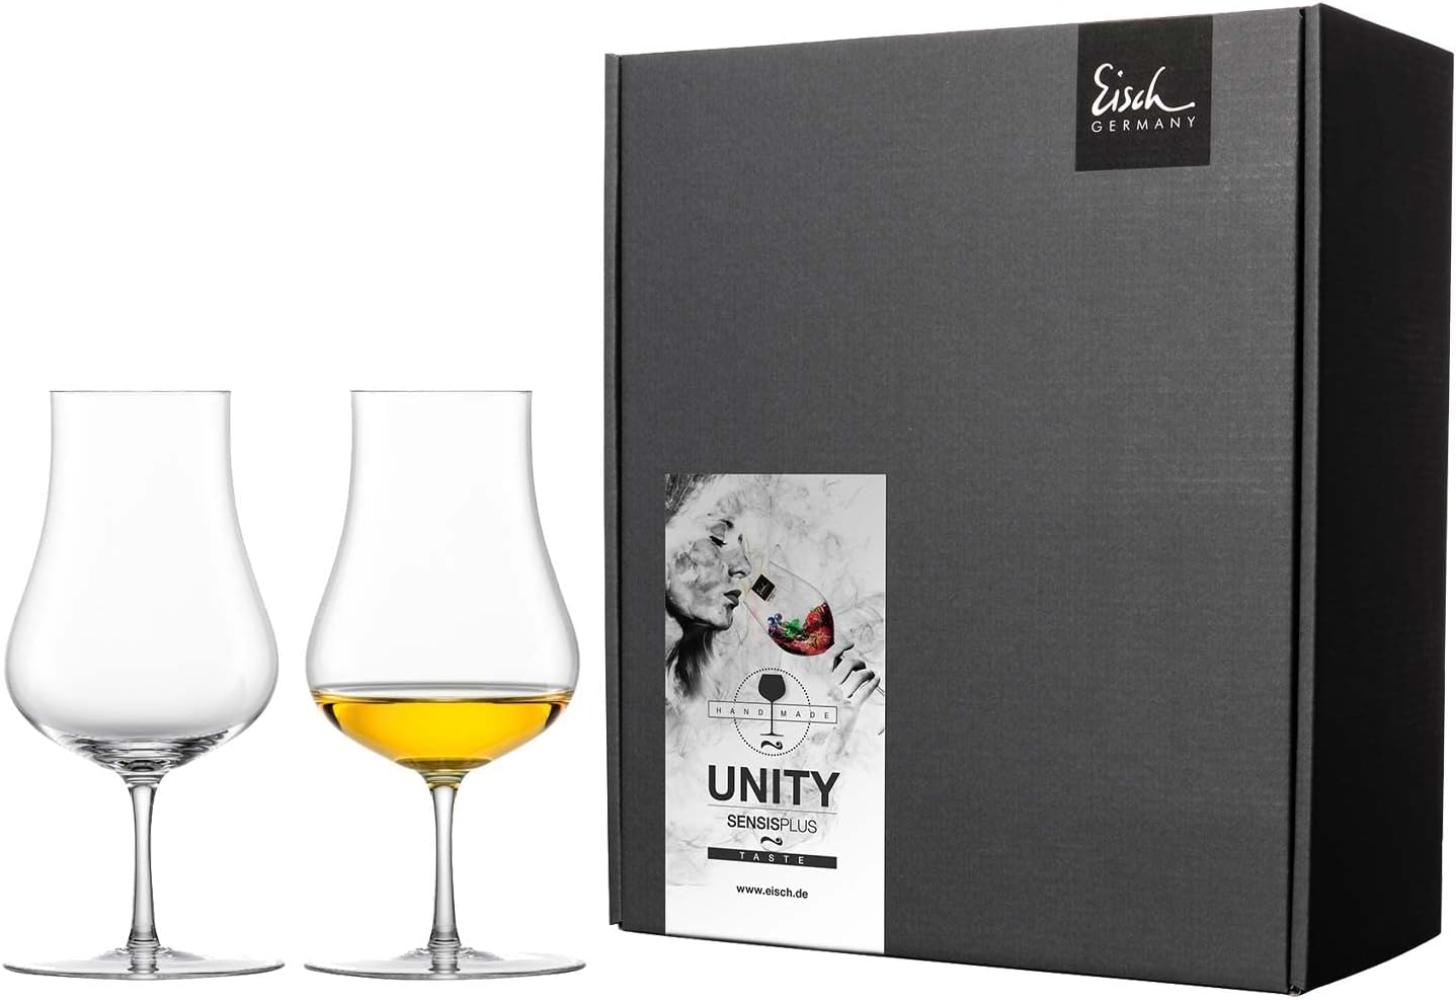 Eisch Unity SensisPlus Malt Whiskygläser im 2er Geschenkkarton - A Bild 1